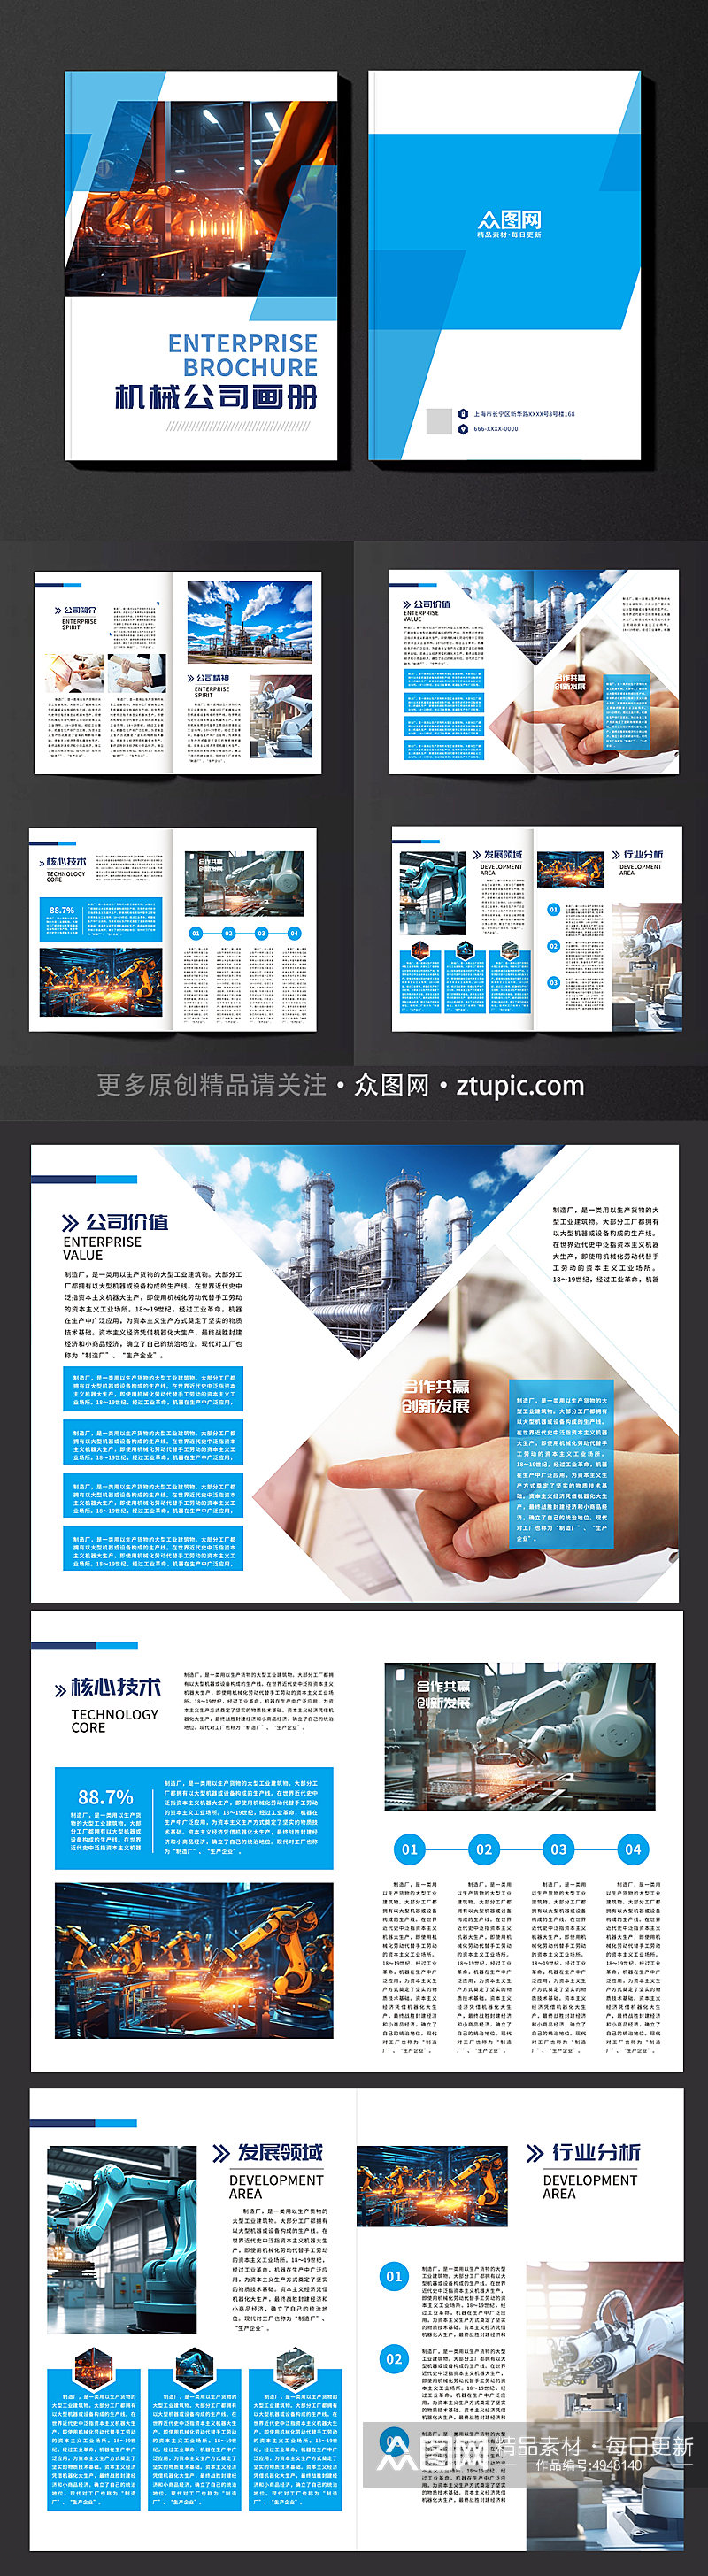 蓝色机械公司工业制造业工厂企业画册素材